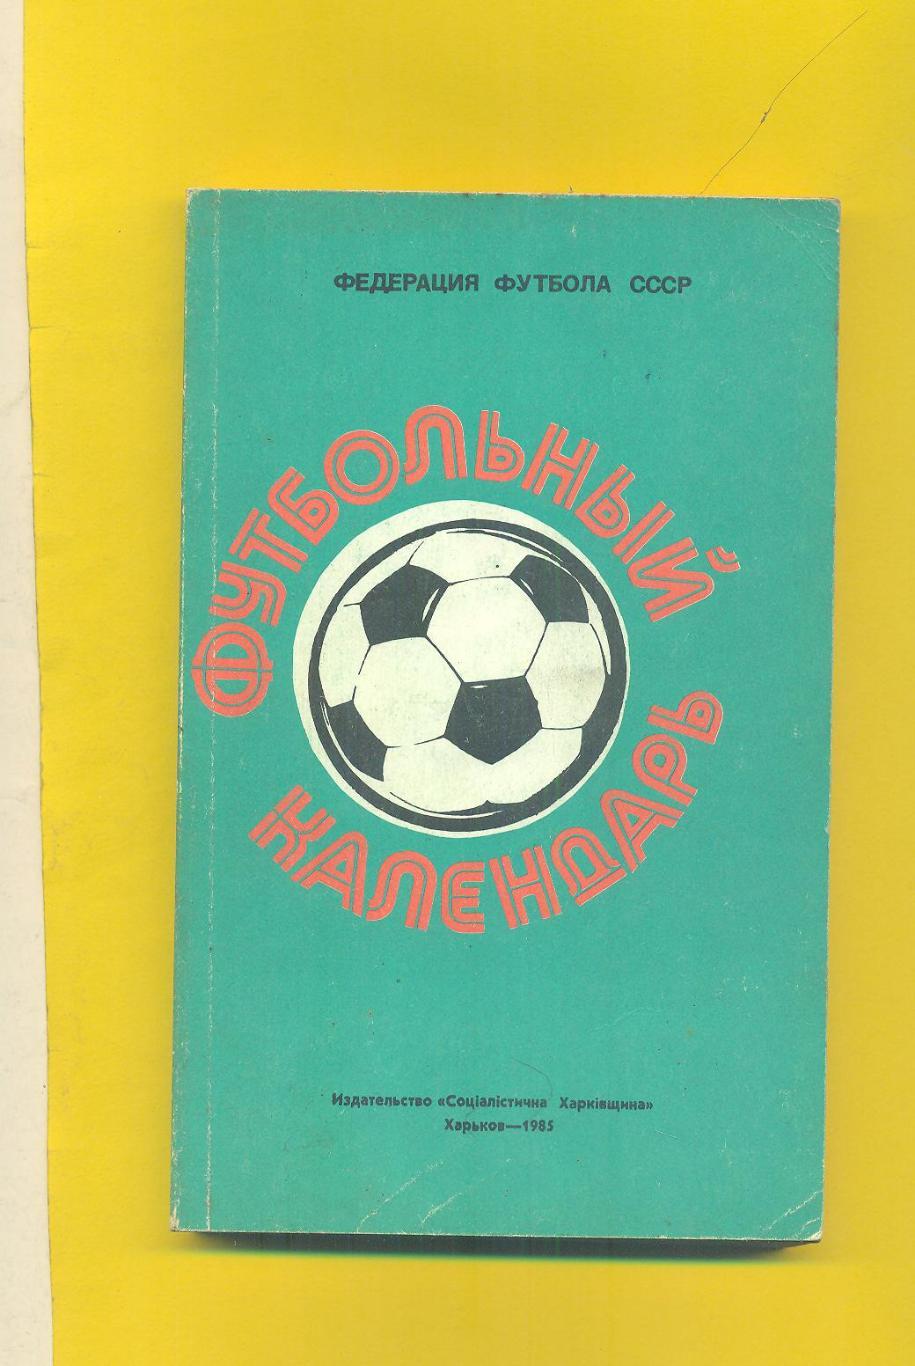 Ю.Ландер.1984-1985.Чемпионат ы.Турниры.Кубки